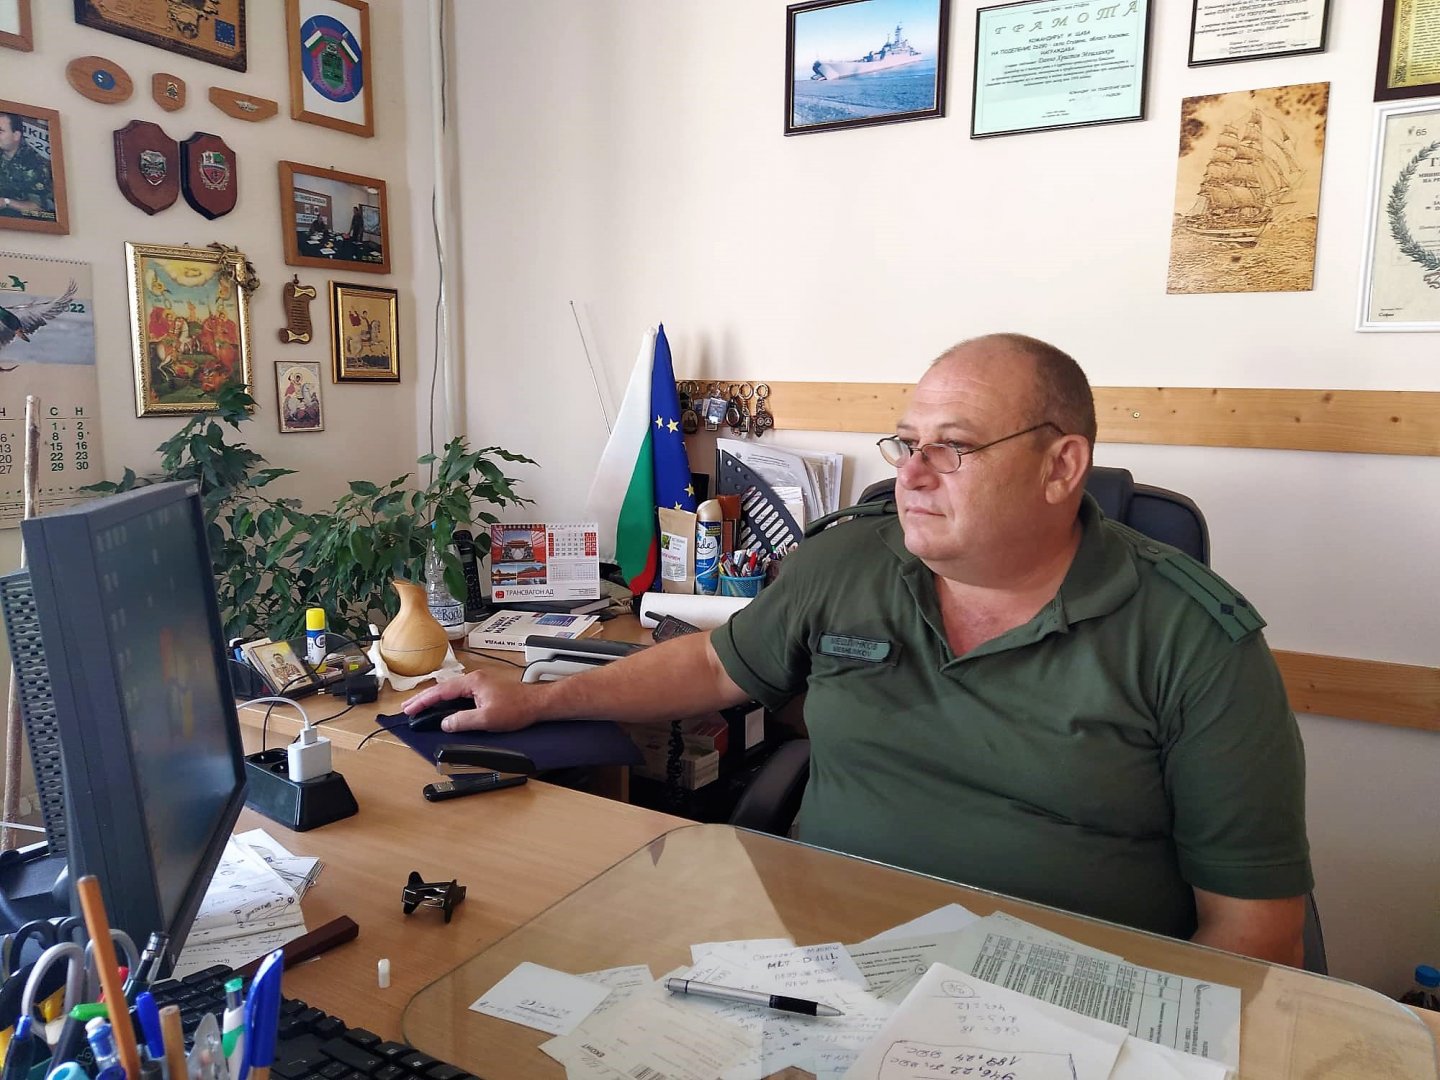 Срочната служба се изпълнява от резервиста за срок от 6 месеца, каза подполковник Данчо Мешлинков - началник на Военно окръжие Бургас